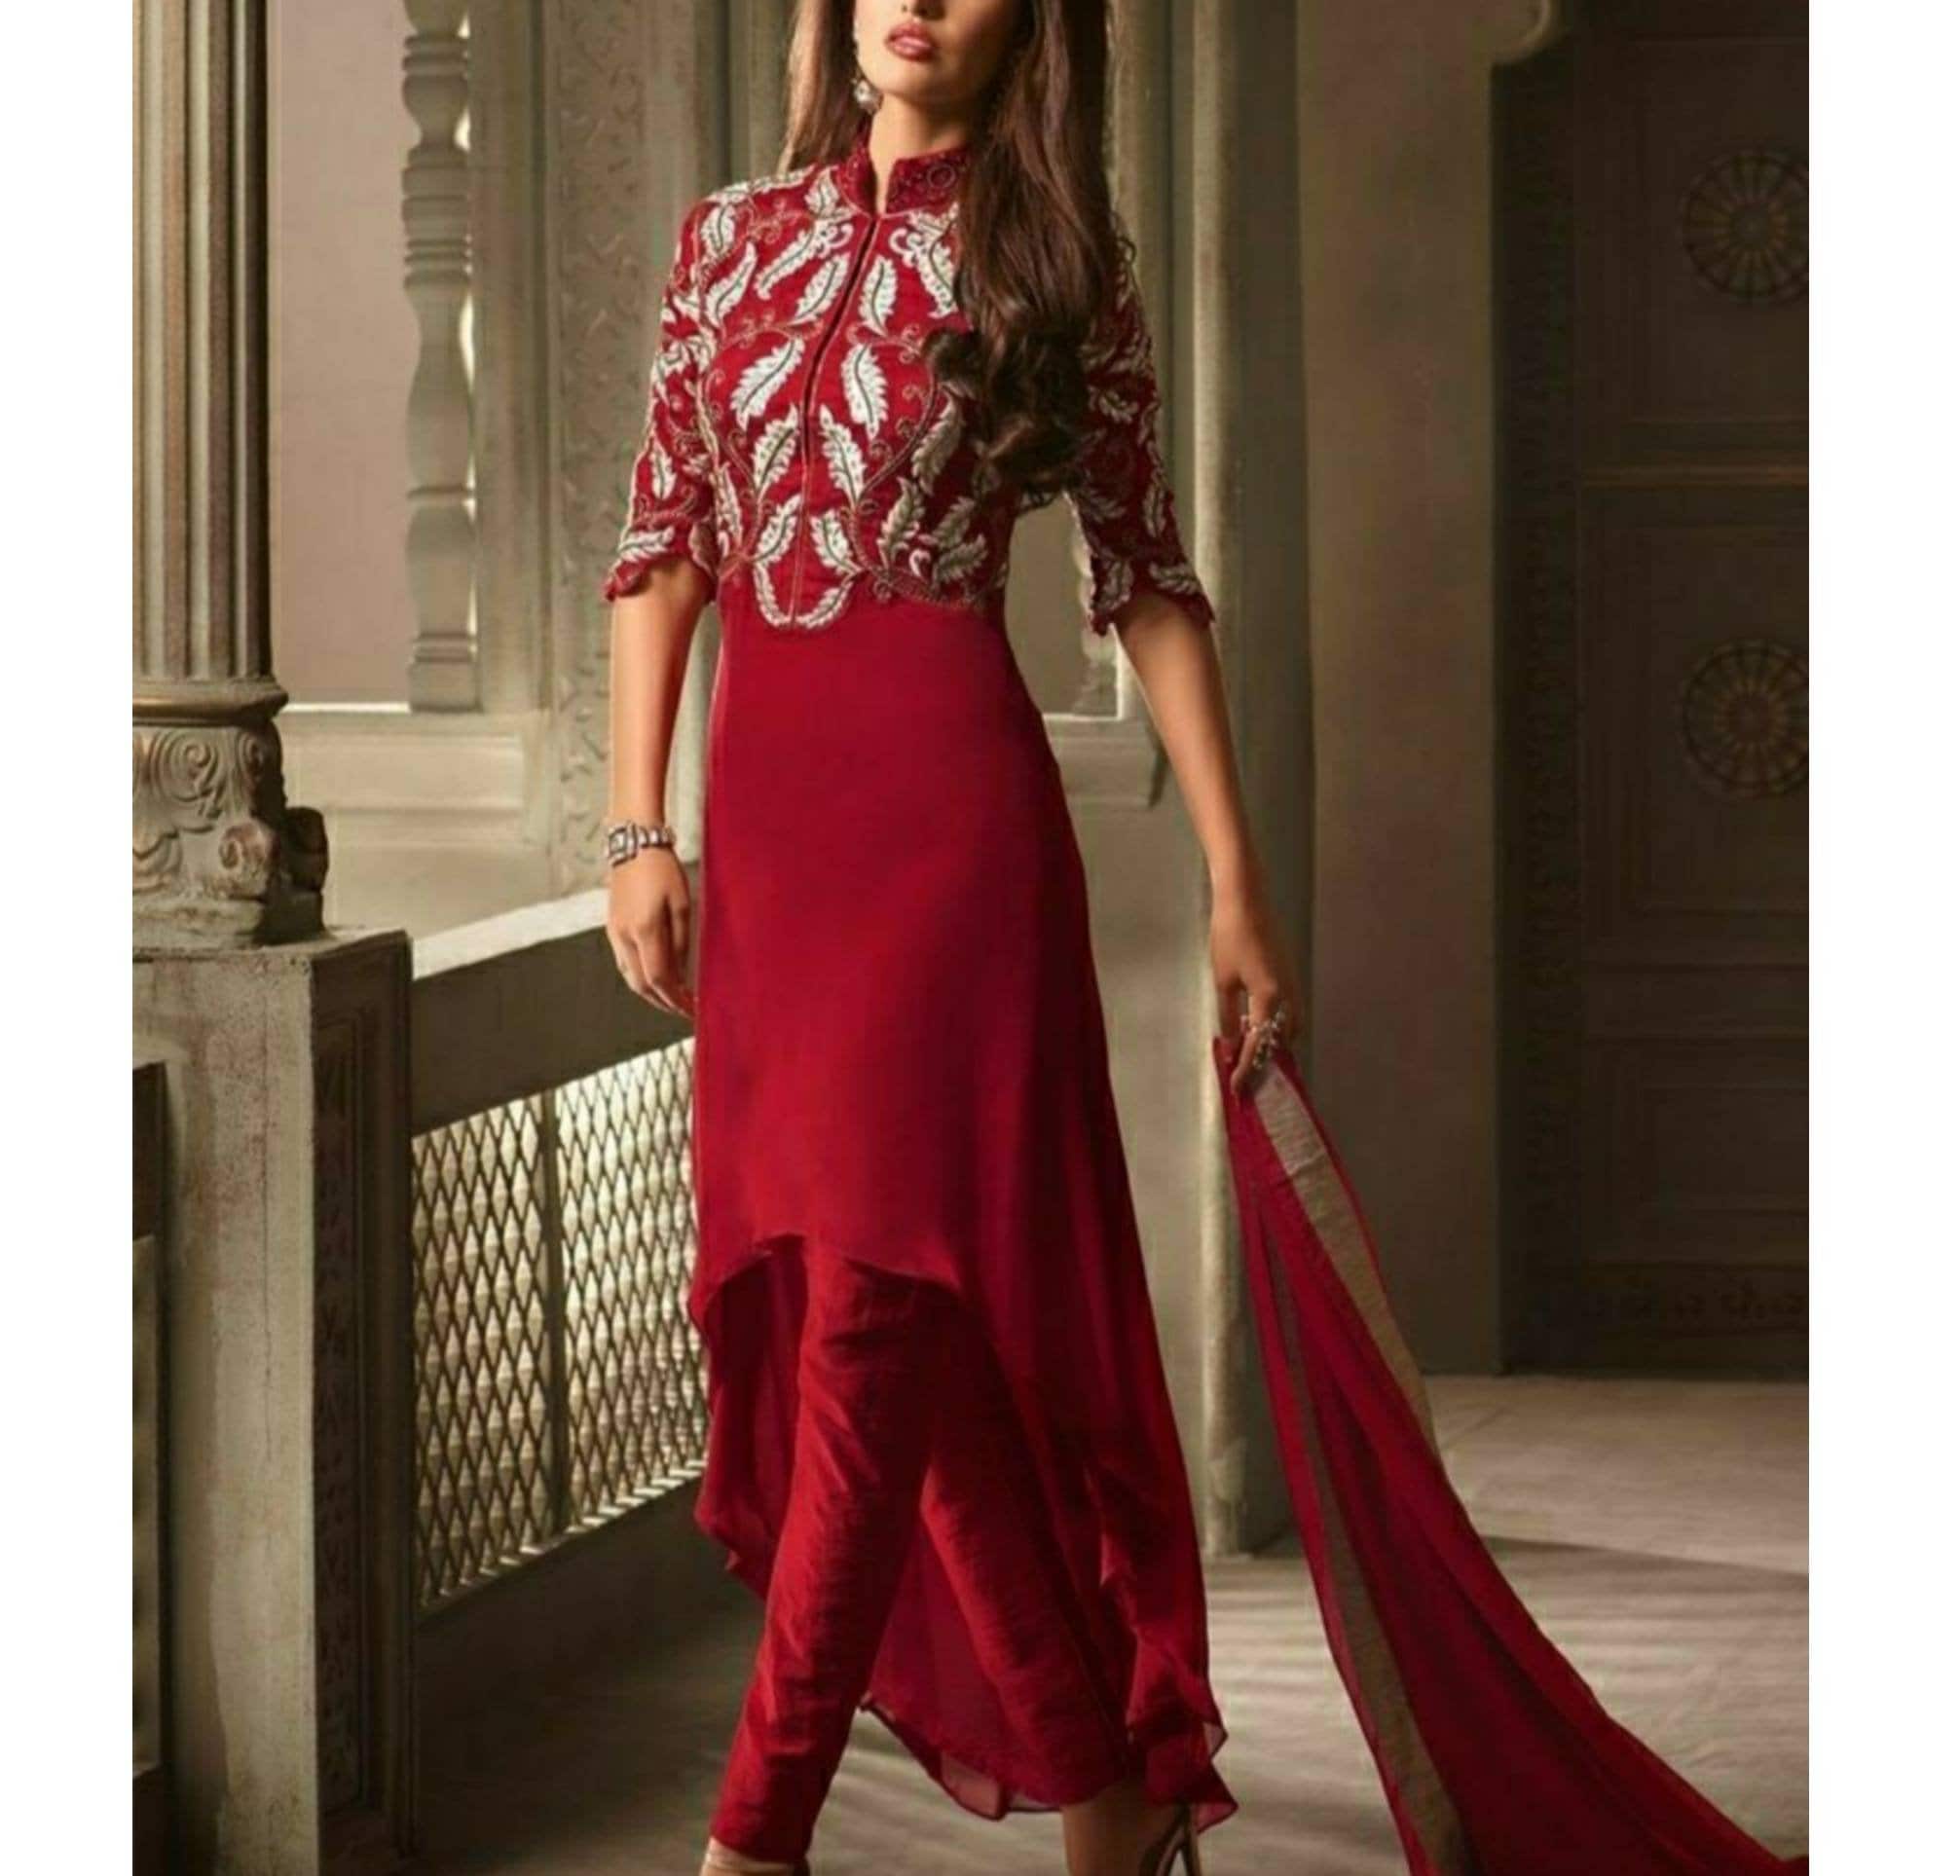 VASTRAPREM Women High Low Beige Dress - Buy VASTRAPREM Women High Low Beige  Dress Online at Best Prices in India | Flipkart.com